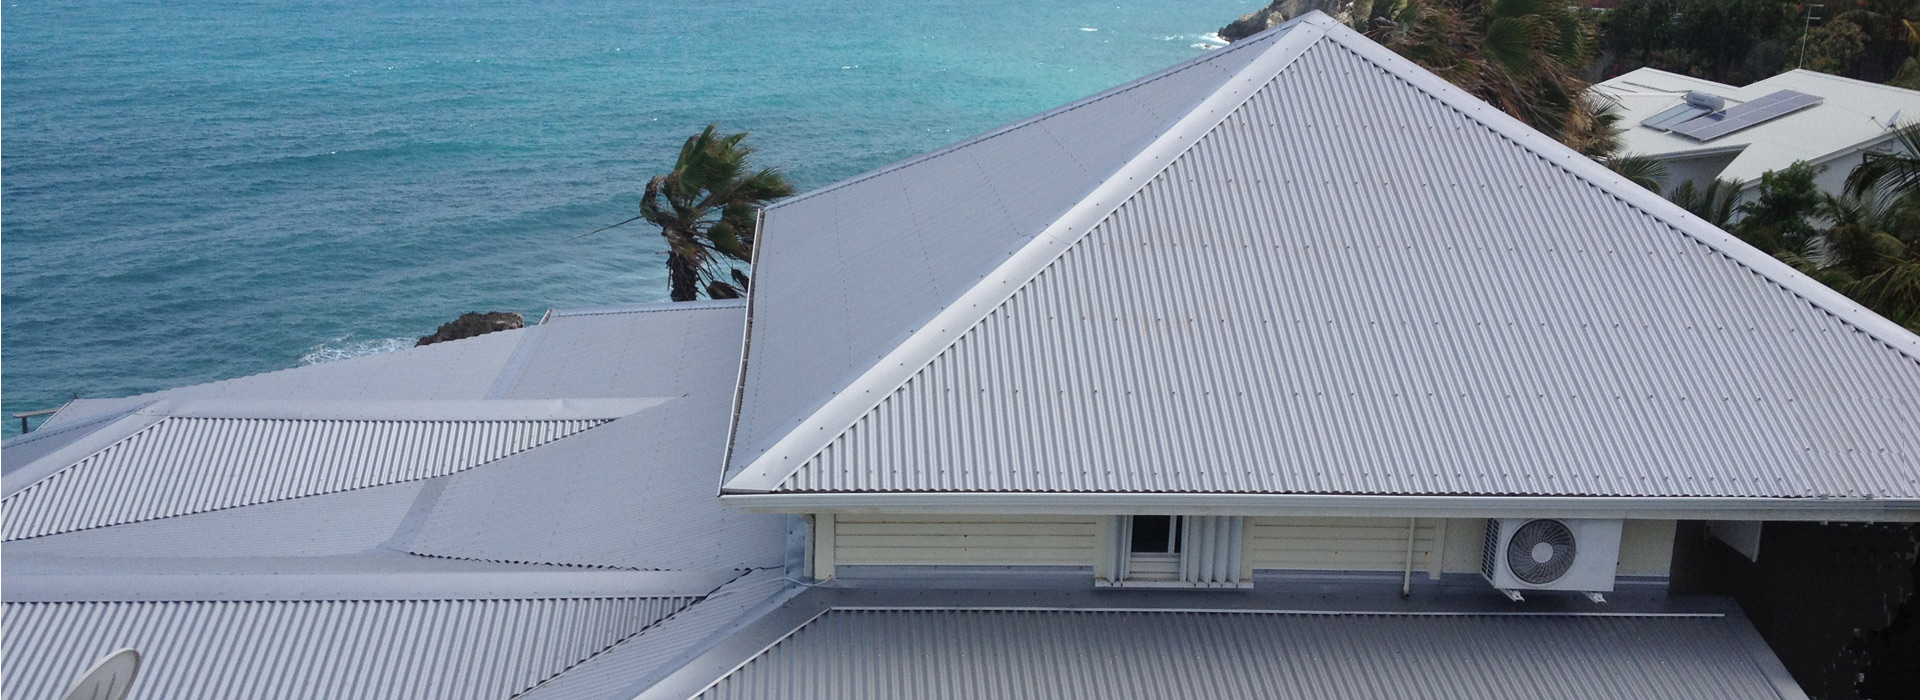 Remplacement ciel de toit en polyuréthane pour voiture en Guadeloupe -  Guadeloupe